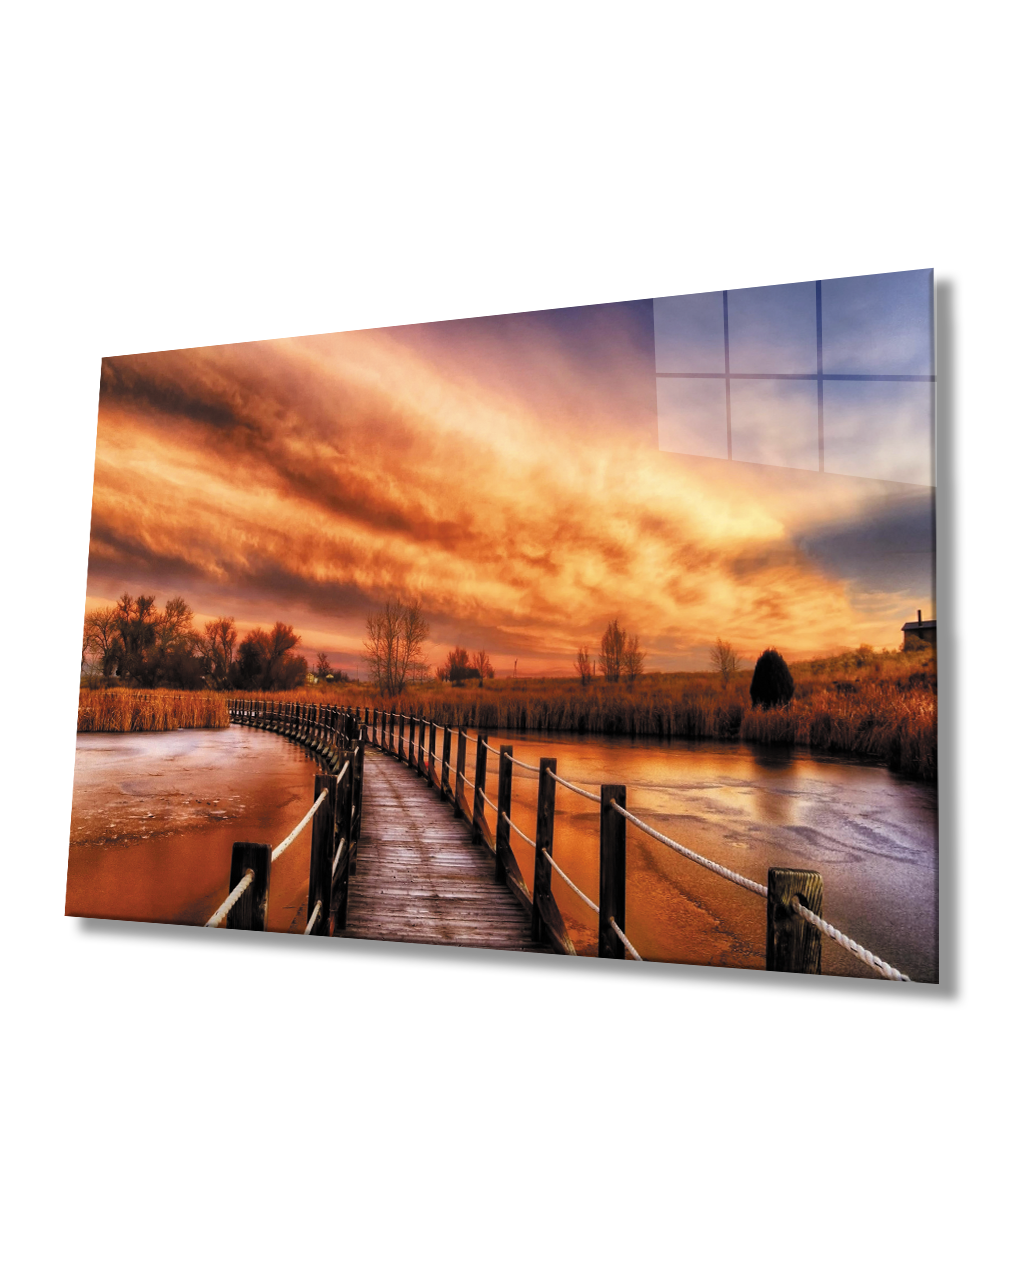 Gün Batımı Manzarası Ahşap Köprü Cam Tablo  4mm Dayanıklı Temperli Cam Sunset Landscape Wooden Bridge Glass Table 4mm Durable Tempered Glass